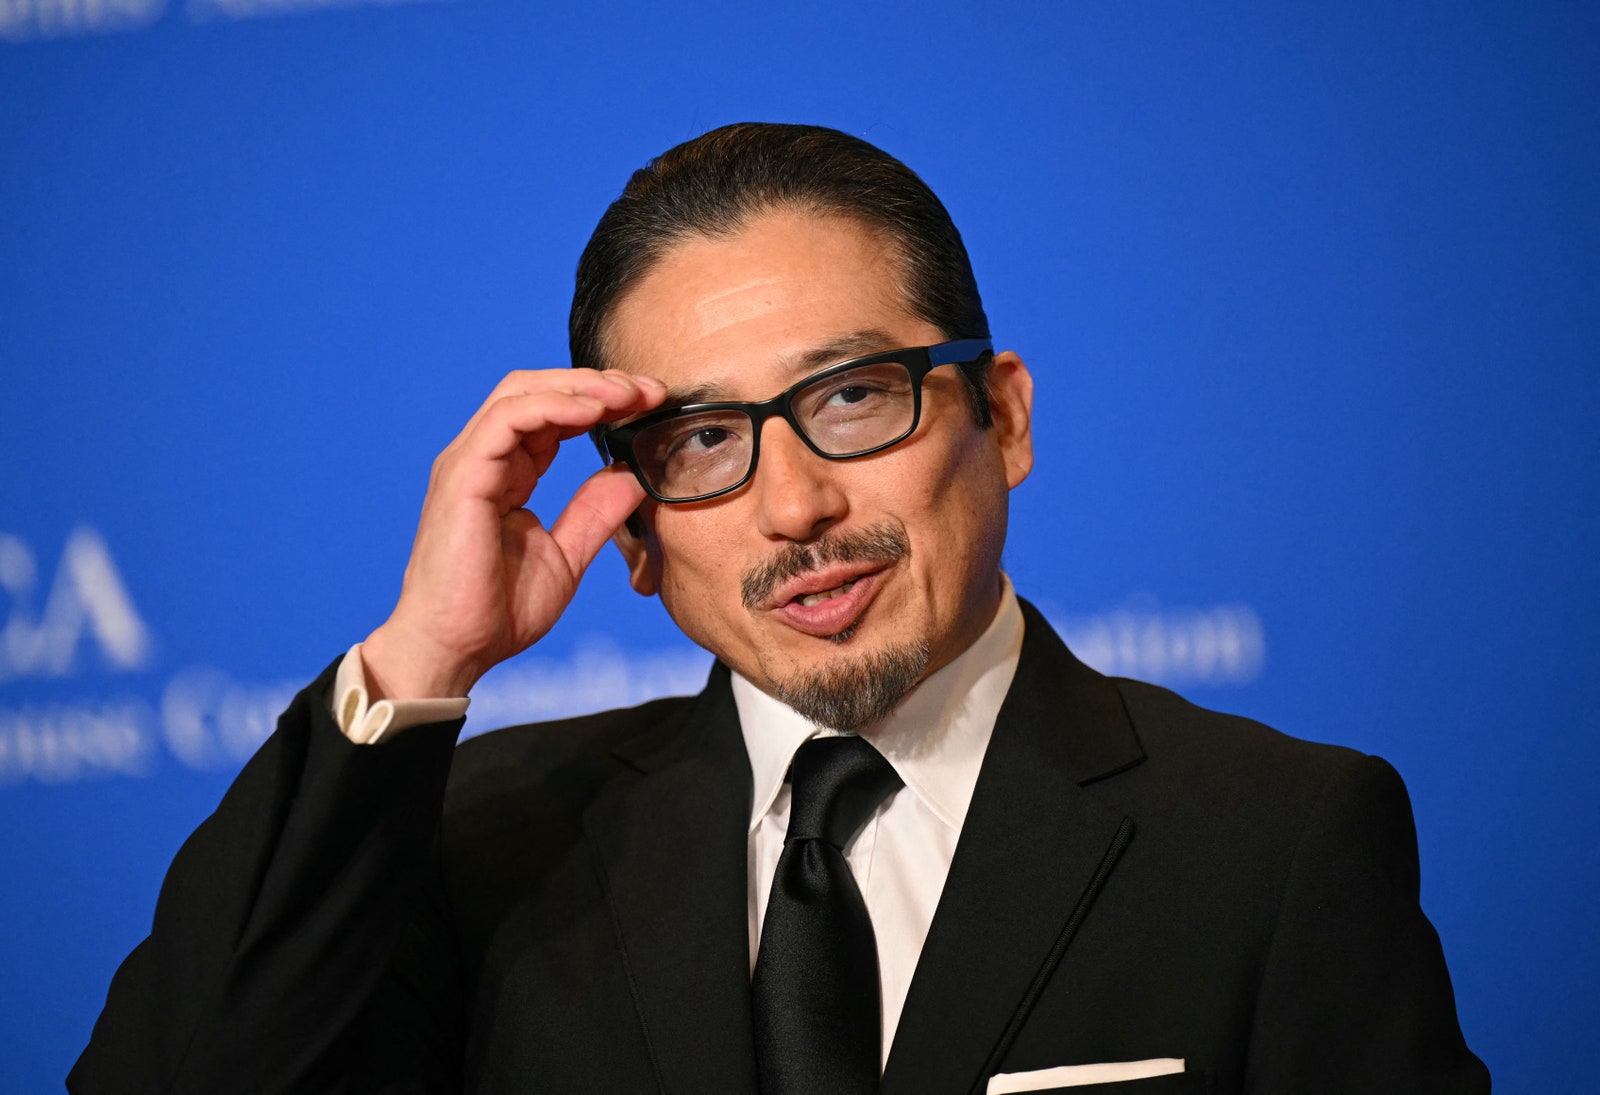 התמונה עשויה להכיל אביזרי Hiroyuki Sanada לבישה רשמית עניבה משקפיים חליפת ביגוד אדם מבוגר ראש ופנים